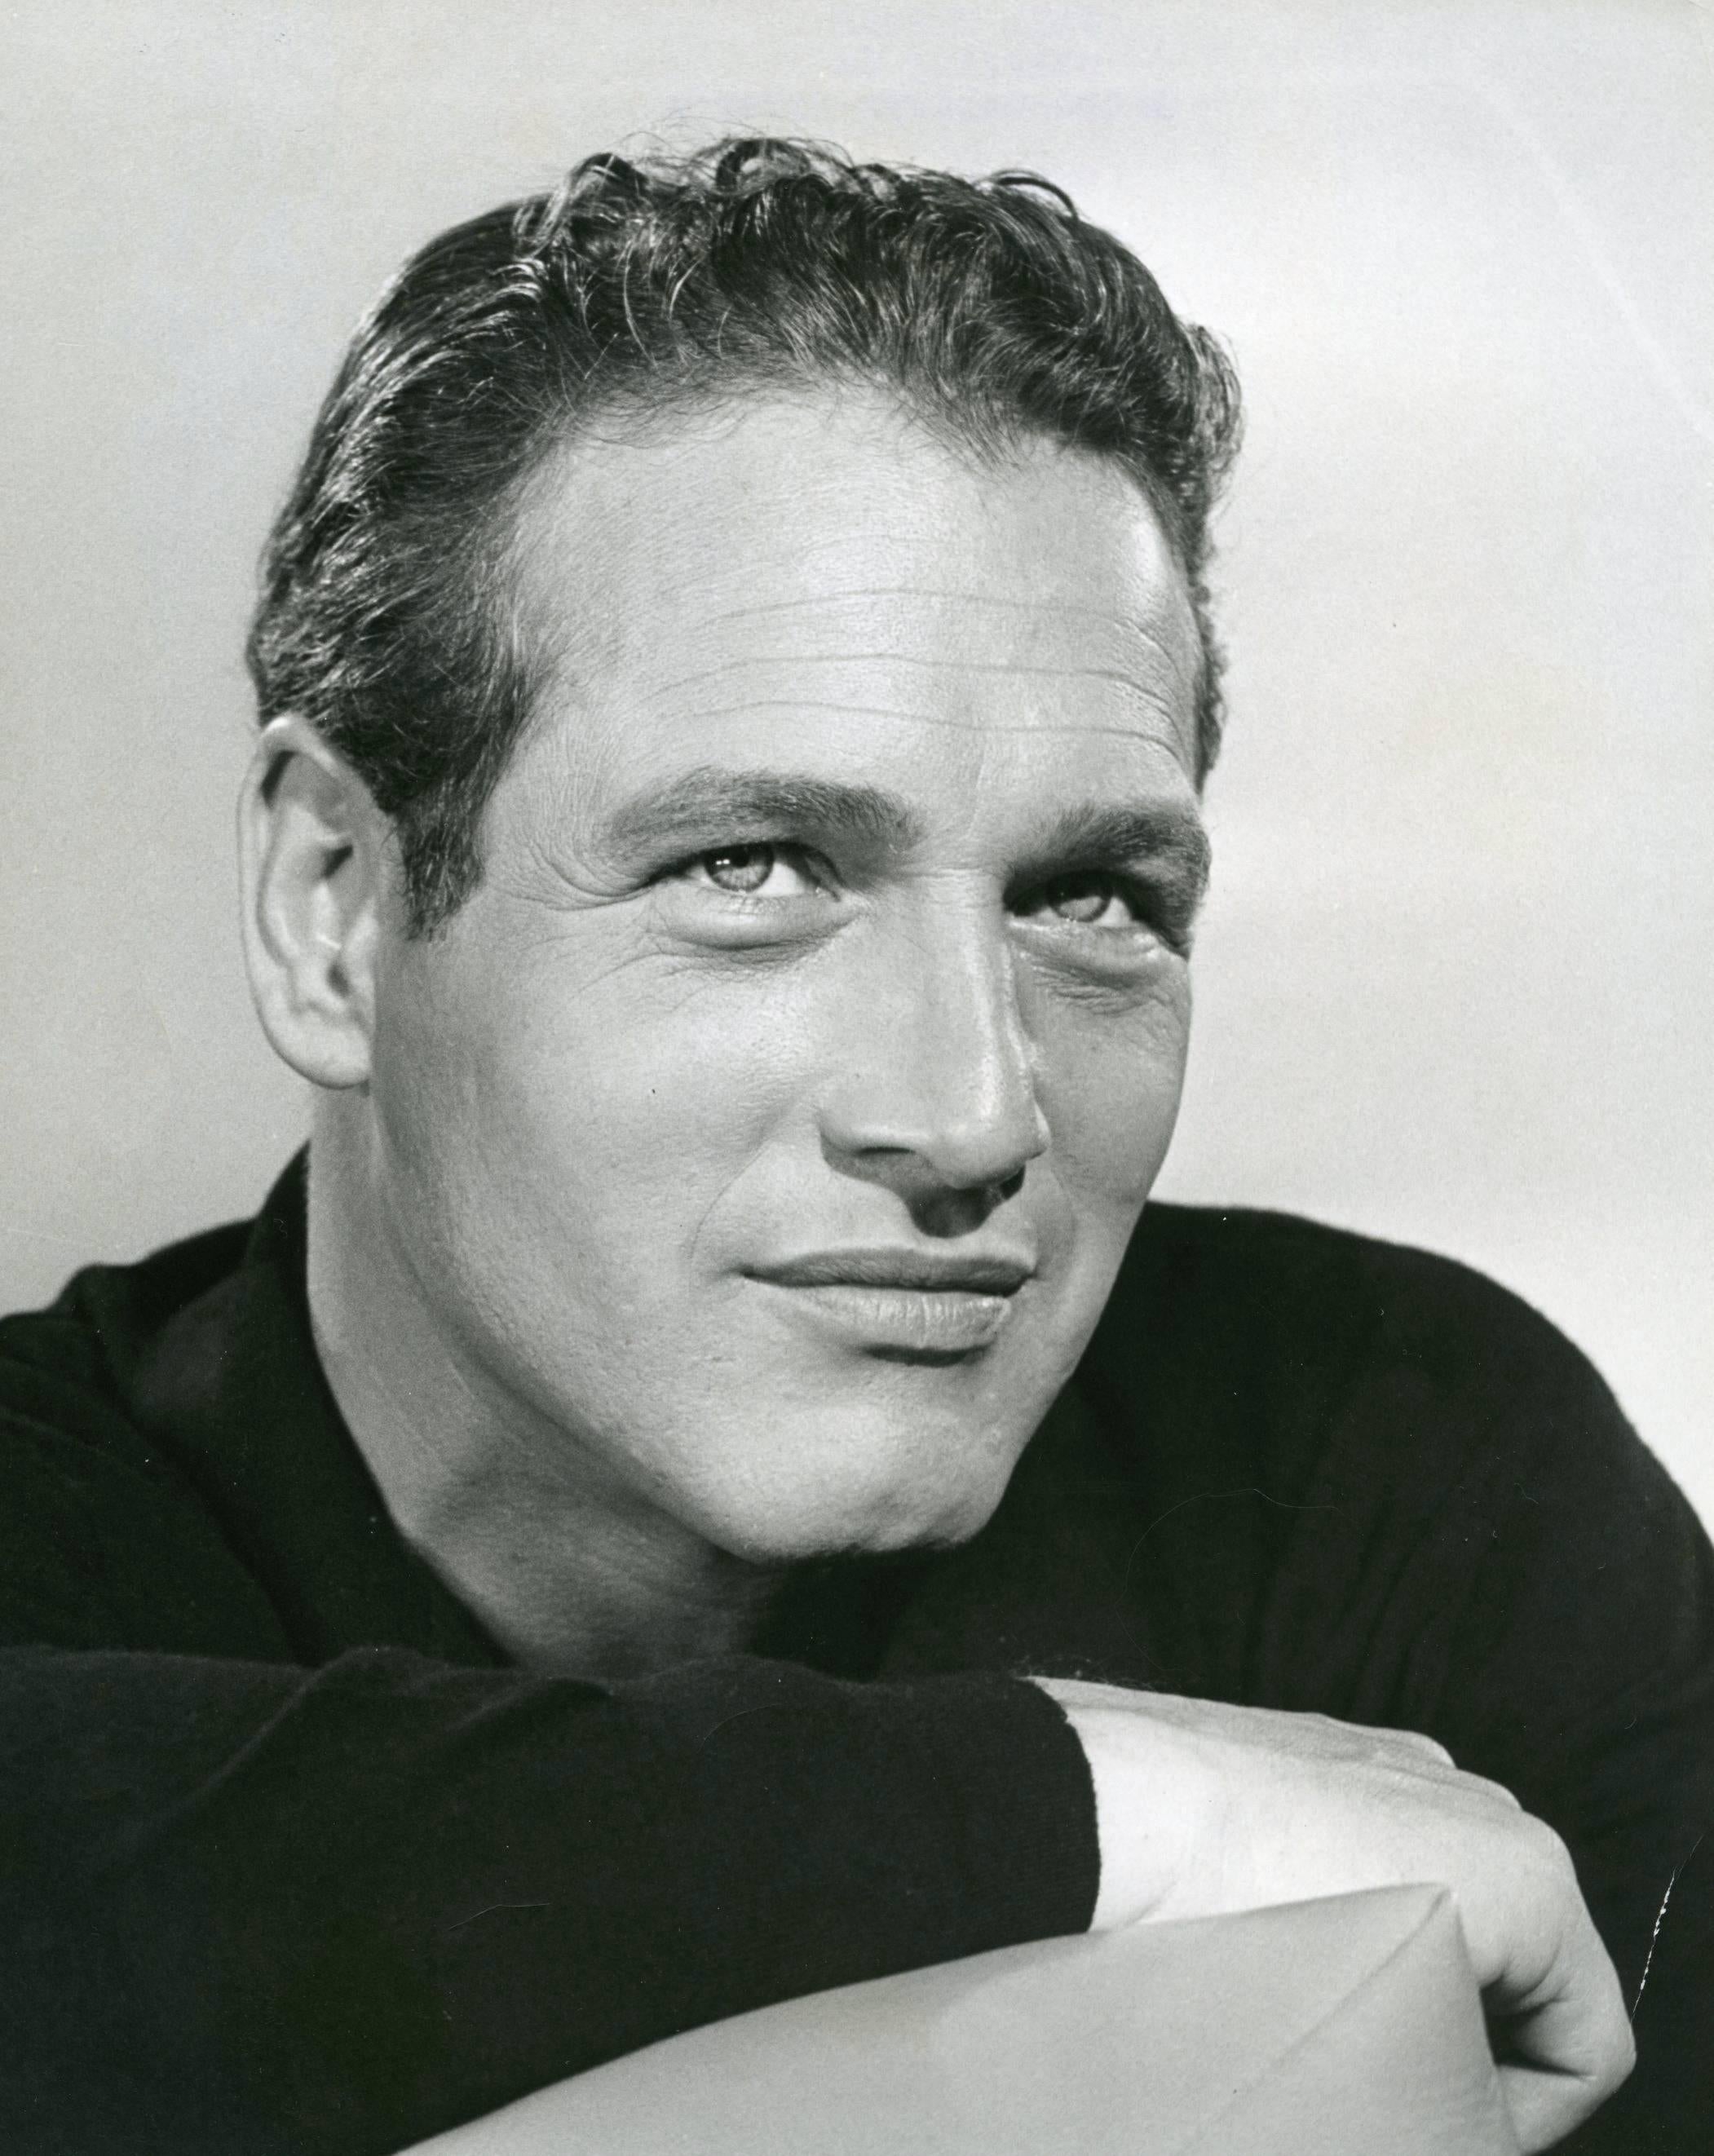 Unknown Portrait Photograph - Paul Newman Vintage Original Photograph